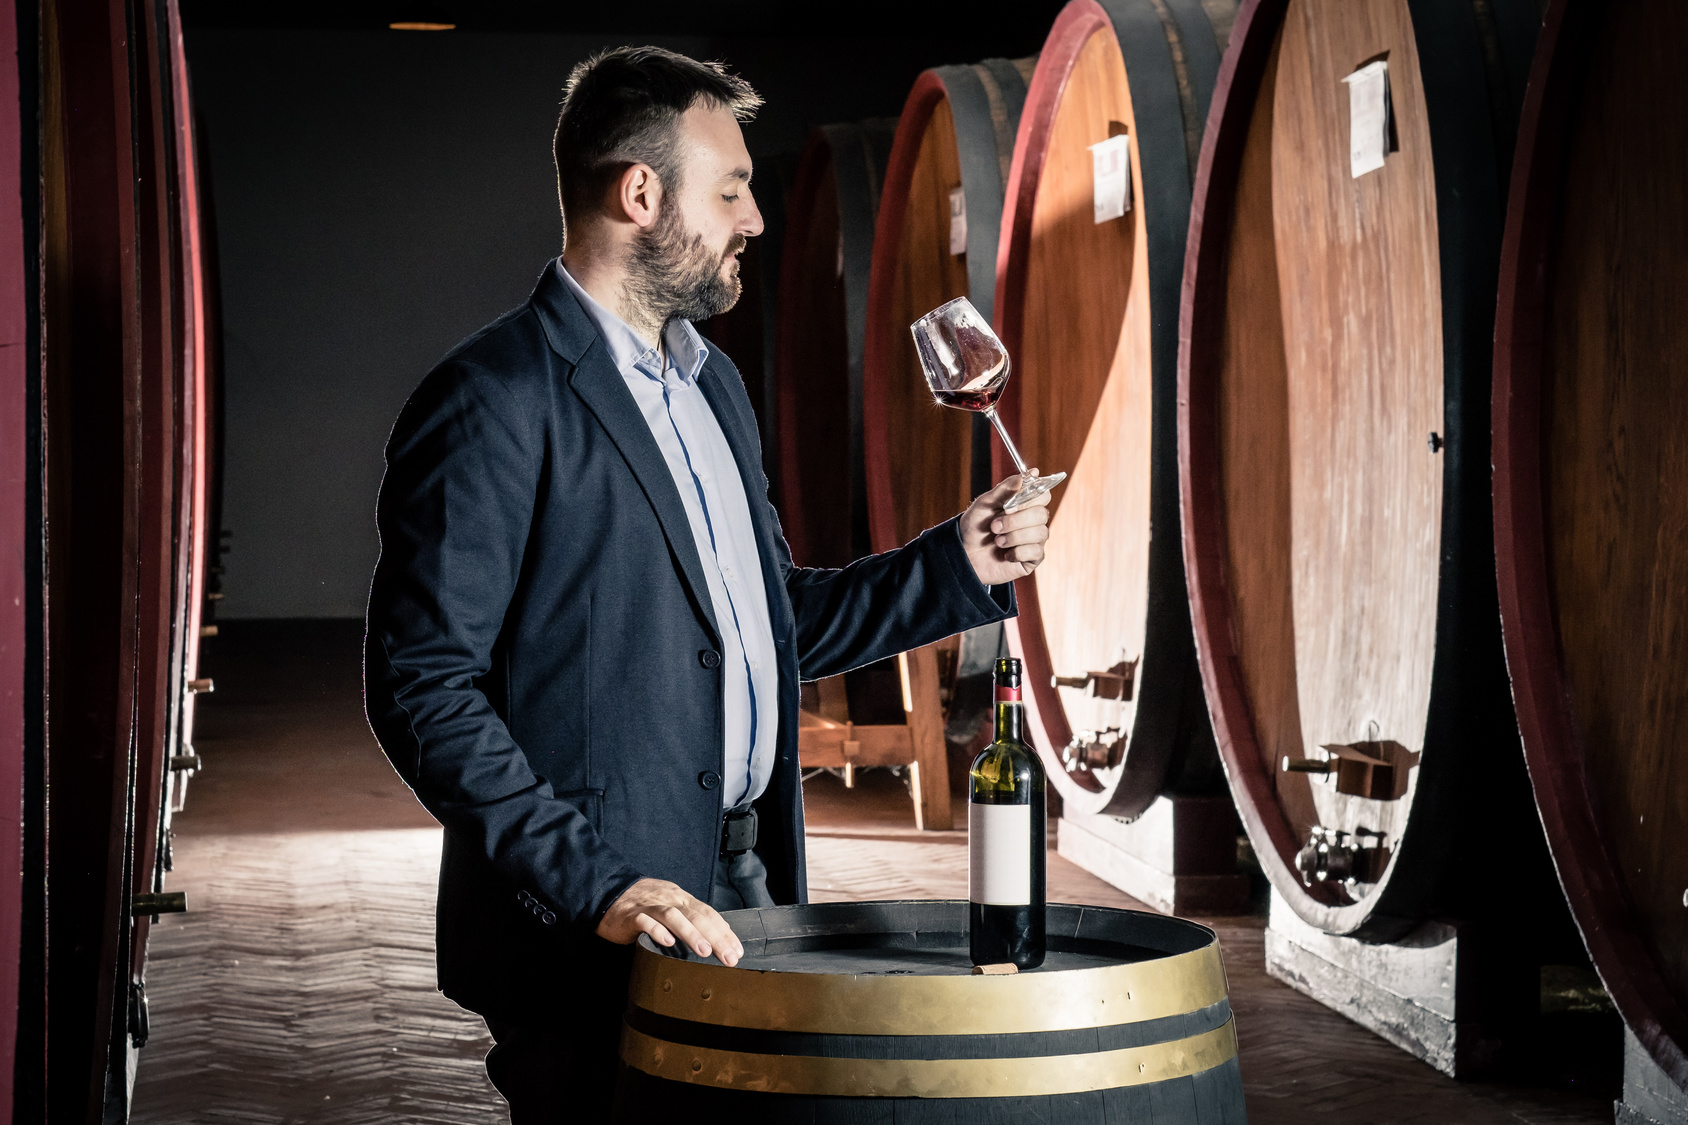 L’œnologue goûte régulièrement les vins afin de déterminer si des modifications sont à apporter au cours de sa vinification en fût. © Giorgio Pulcini, Fotolia